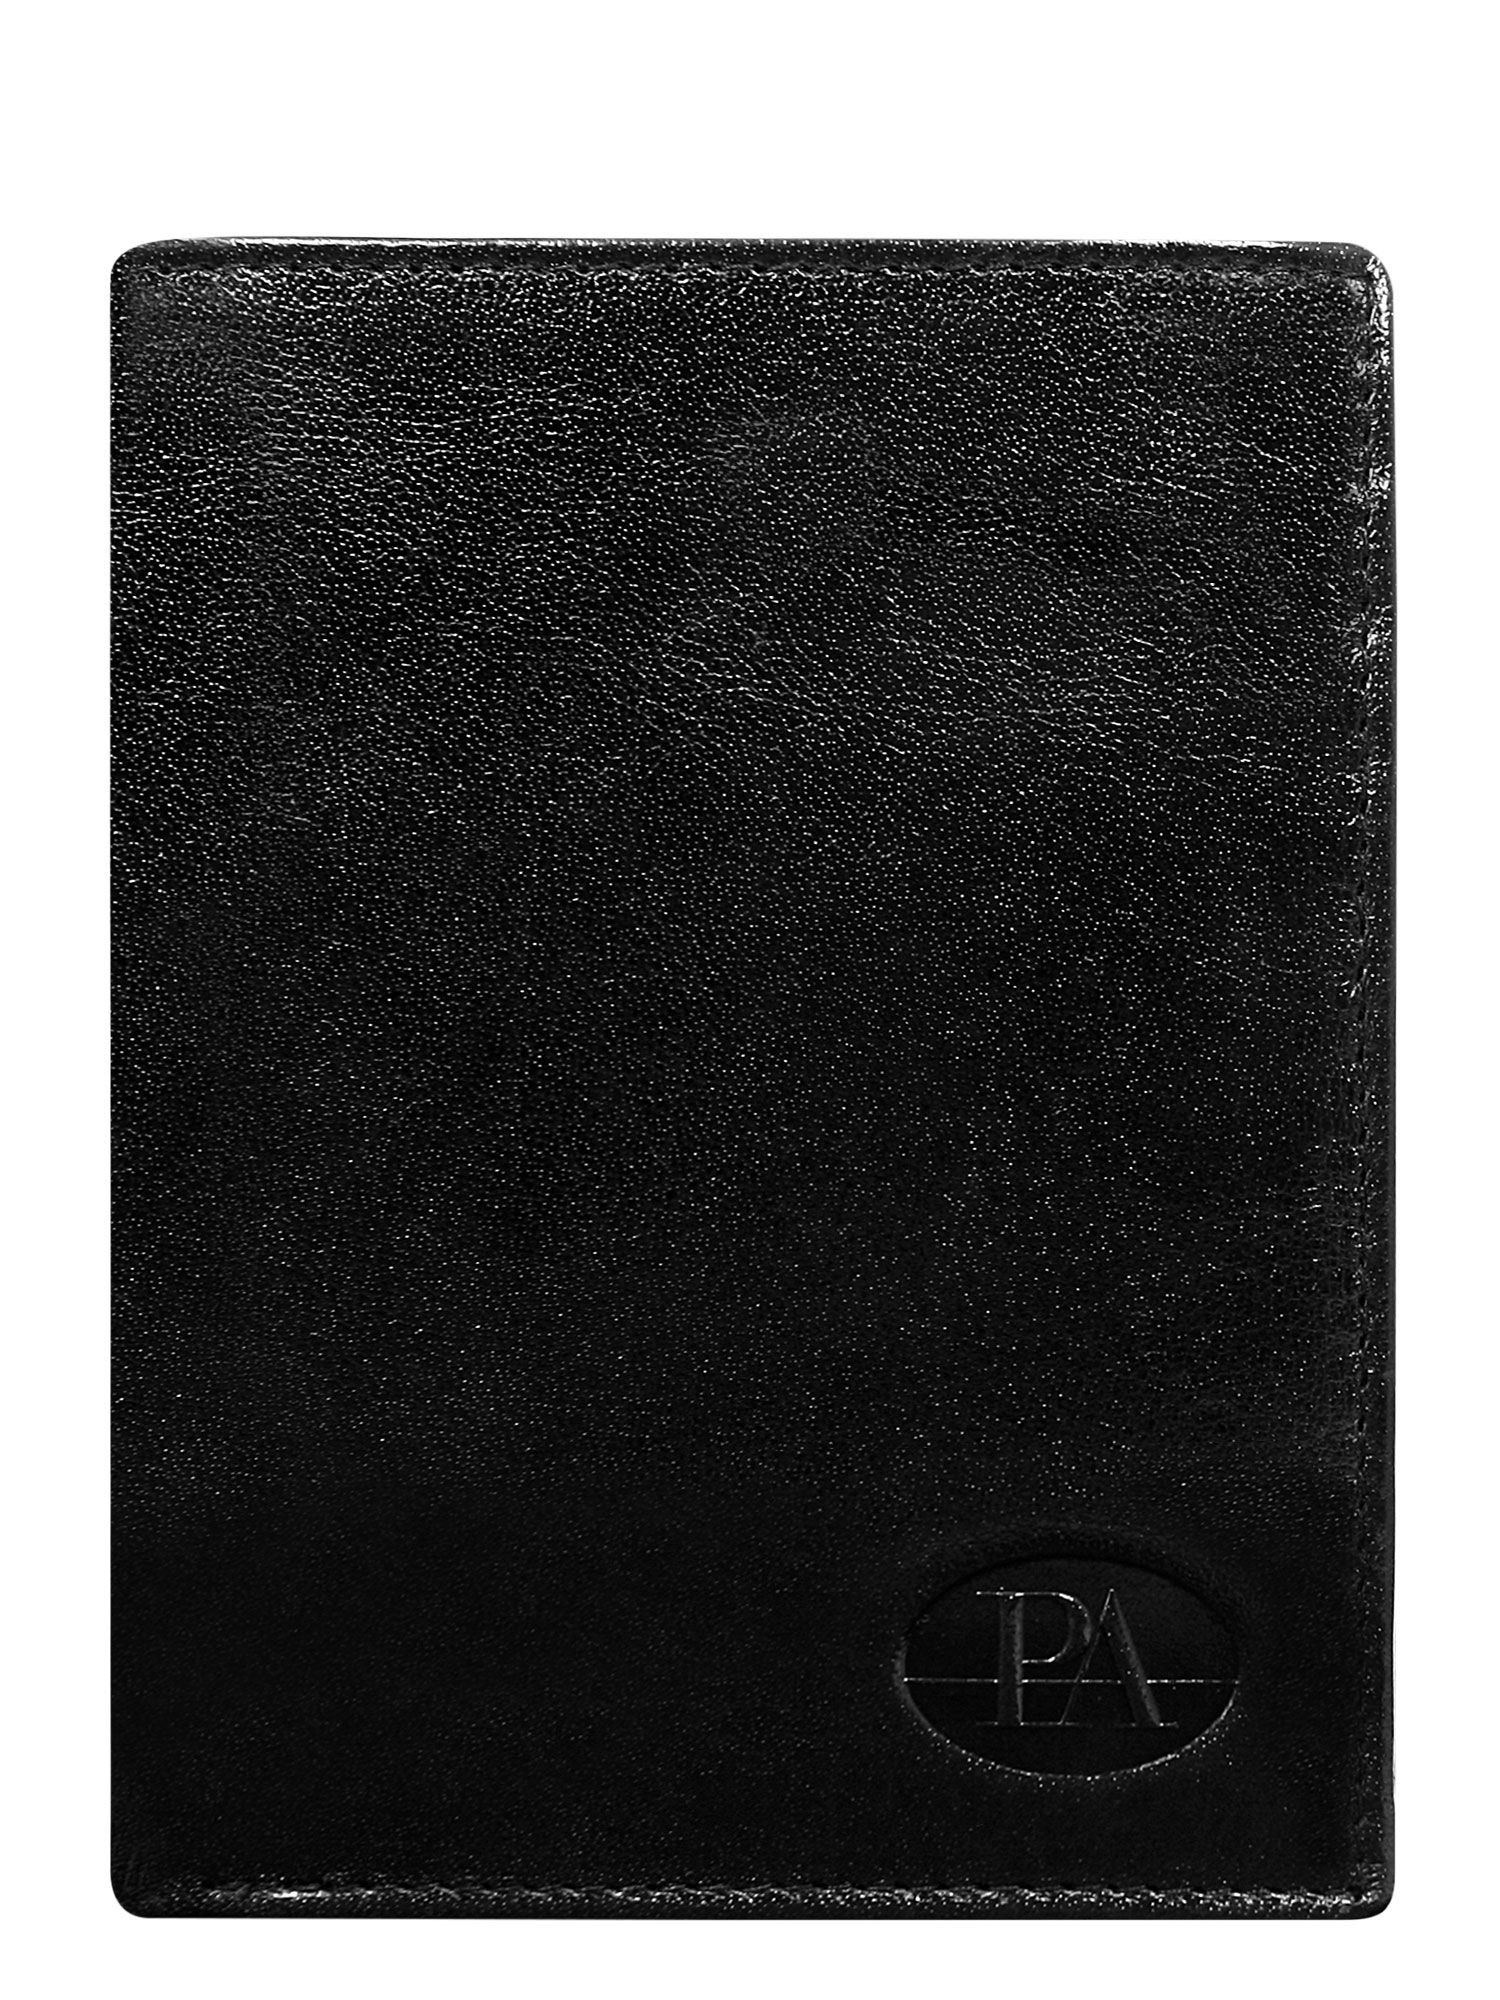 Peněženka CE PR PW 007 model 14833816 černá - FPrice Velikost: jedna velikost